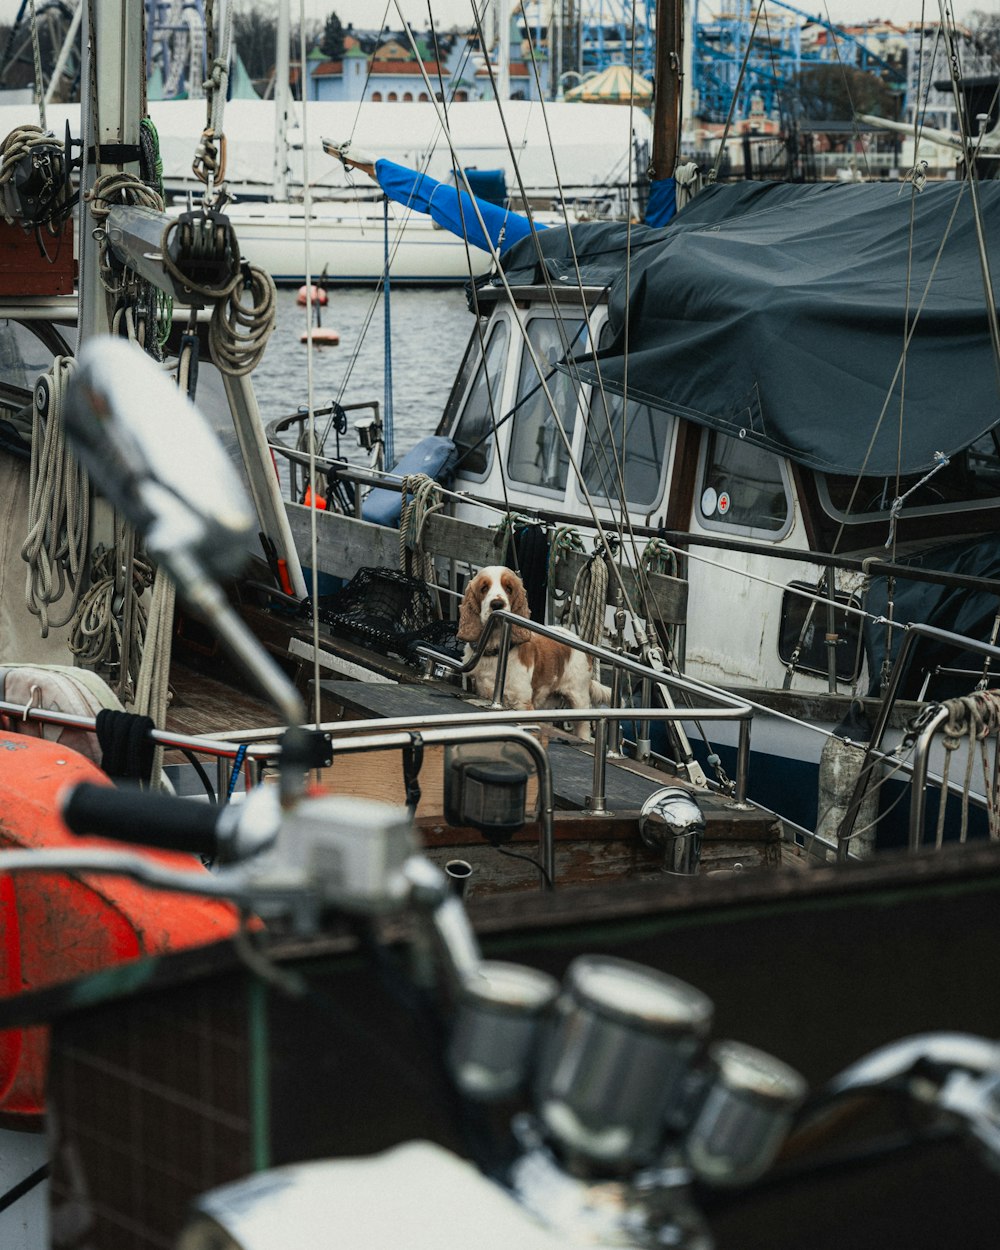 Ein Hund sitzt auf dem Deck eines Bootes